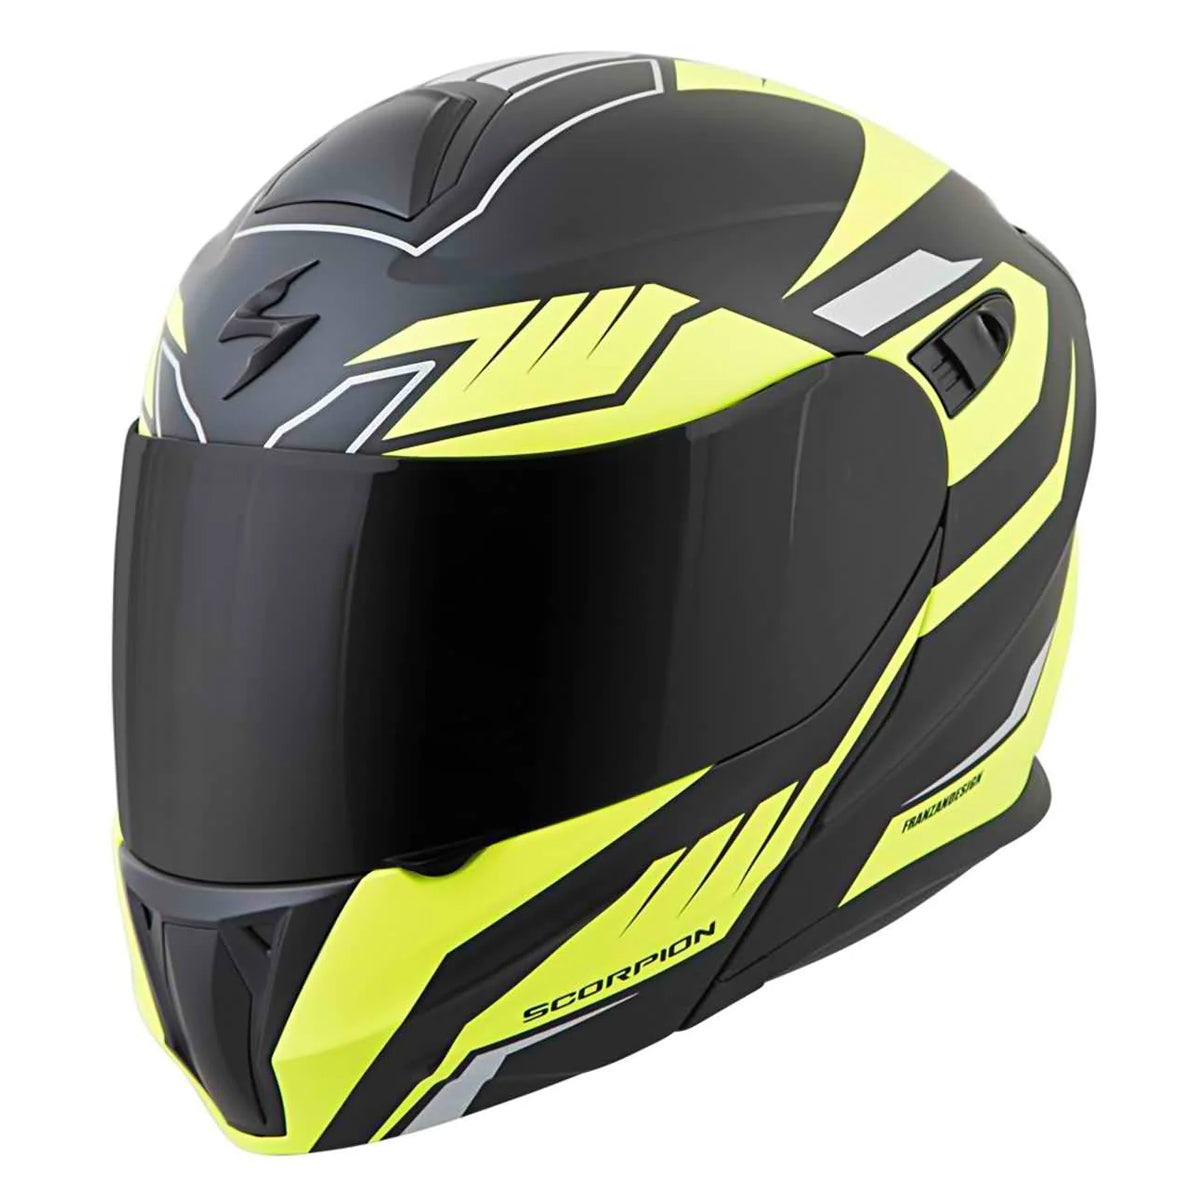 Scorpion EXO-GT920 Shuttle Adult Street Helmets